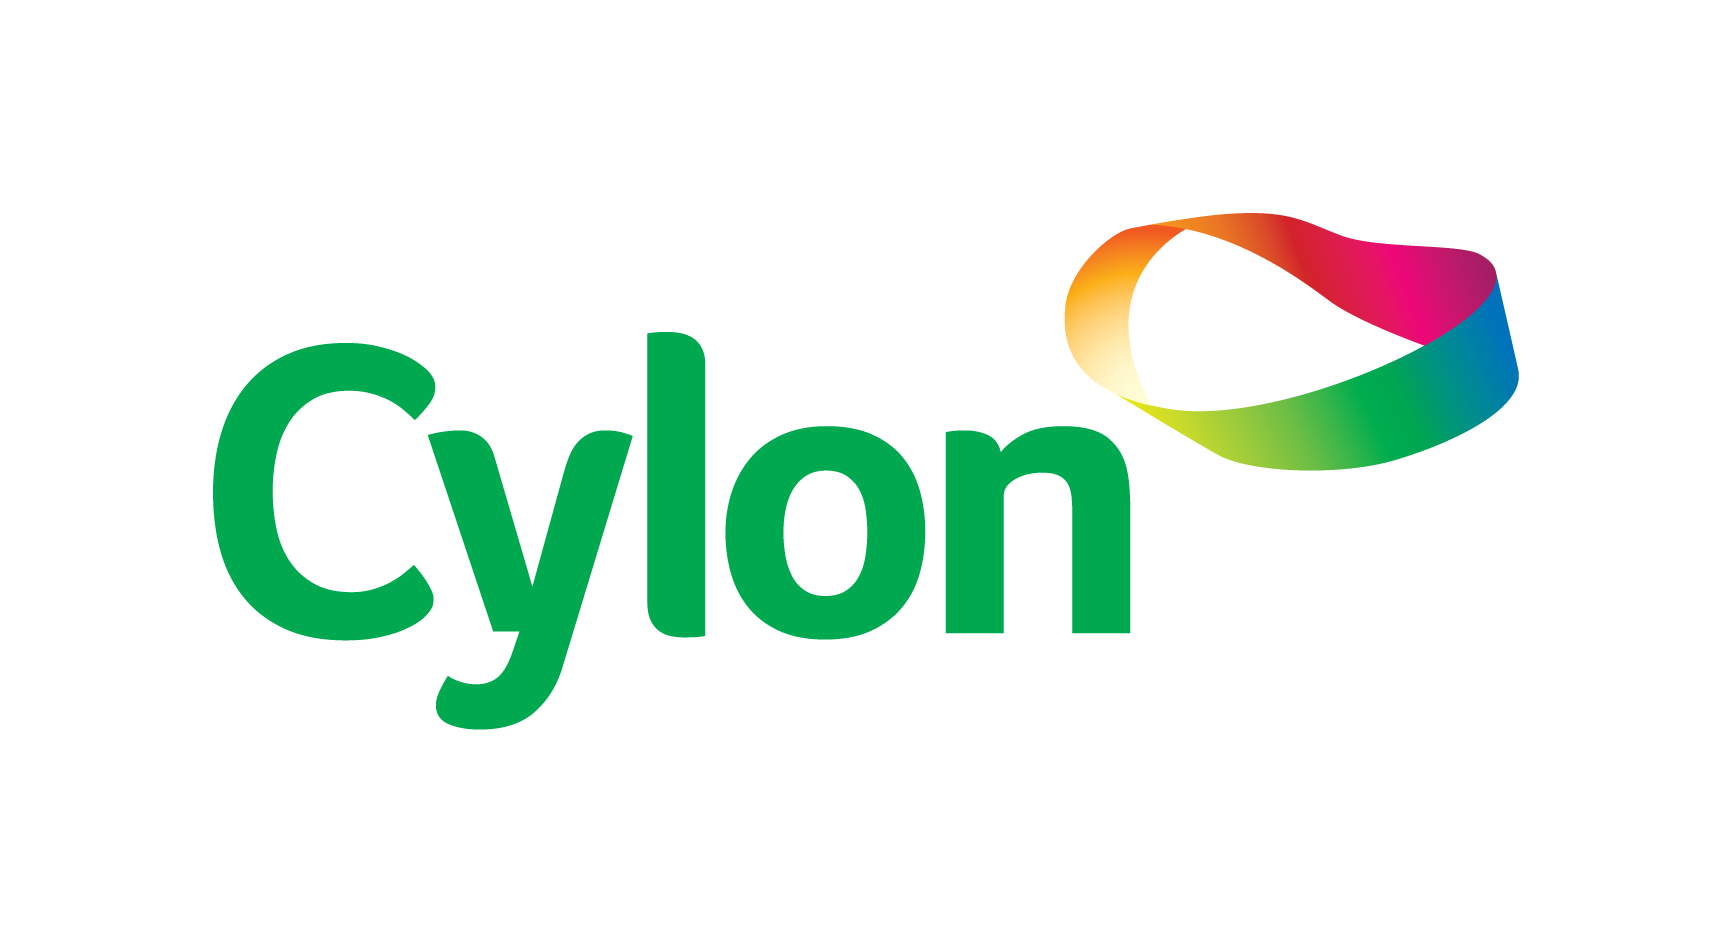 Cylon-CMYK-png